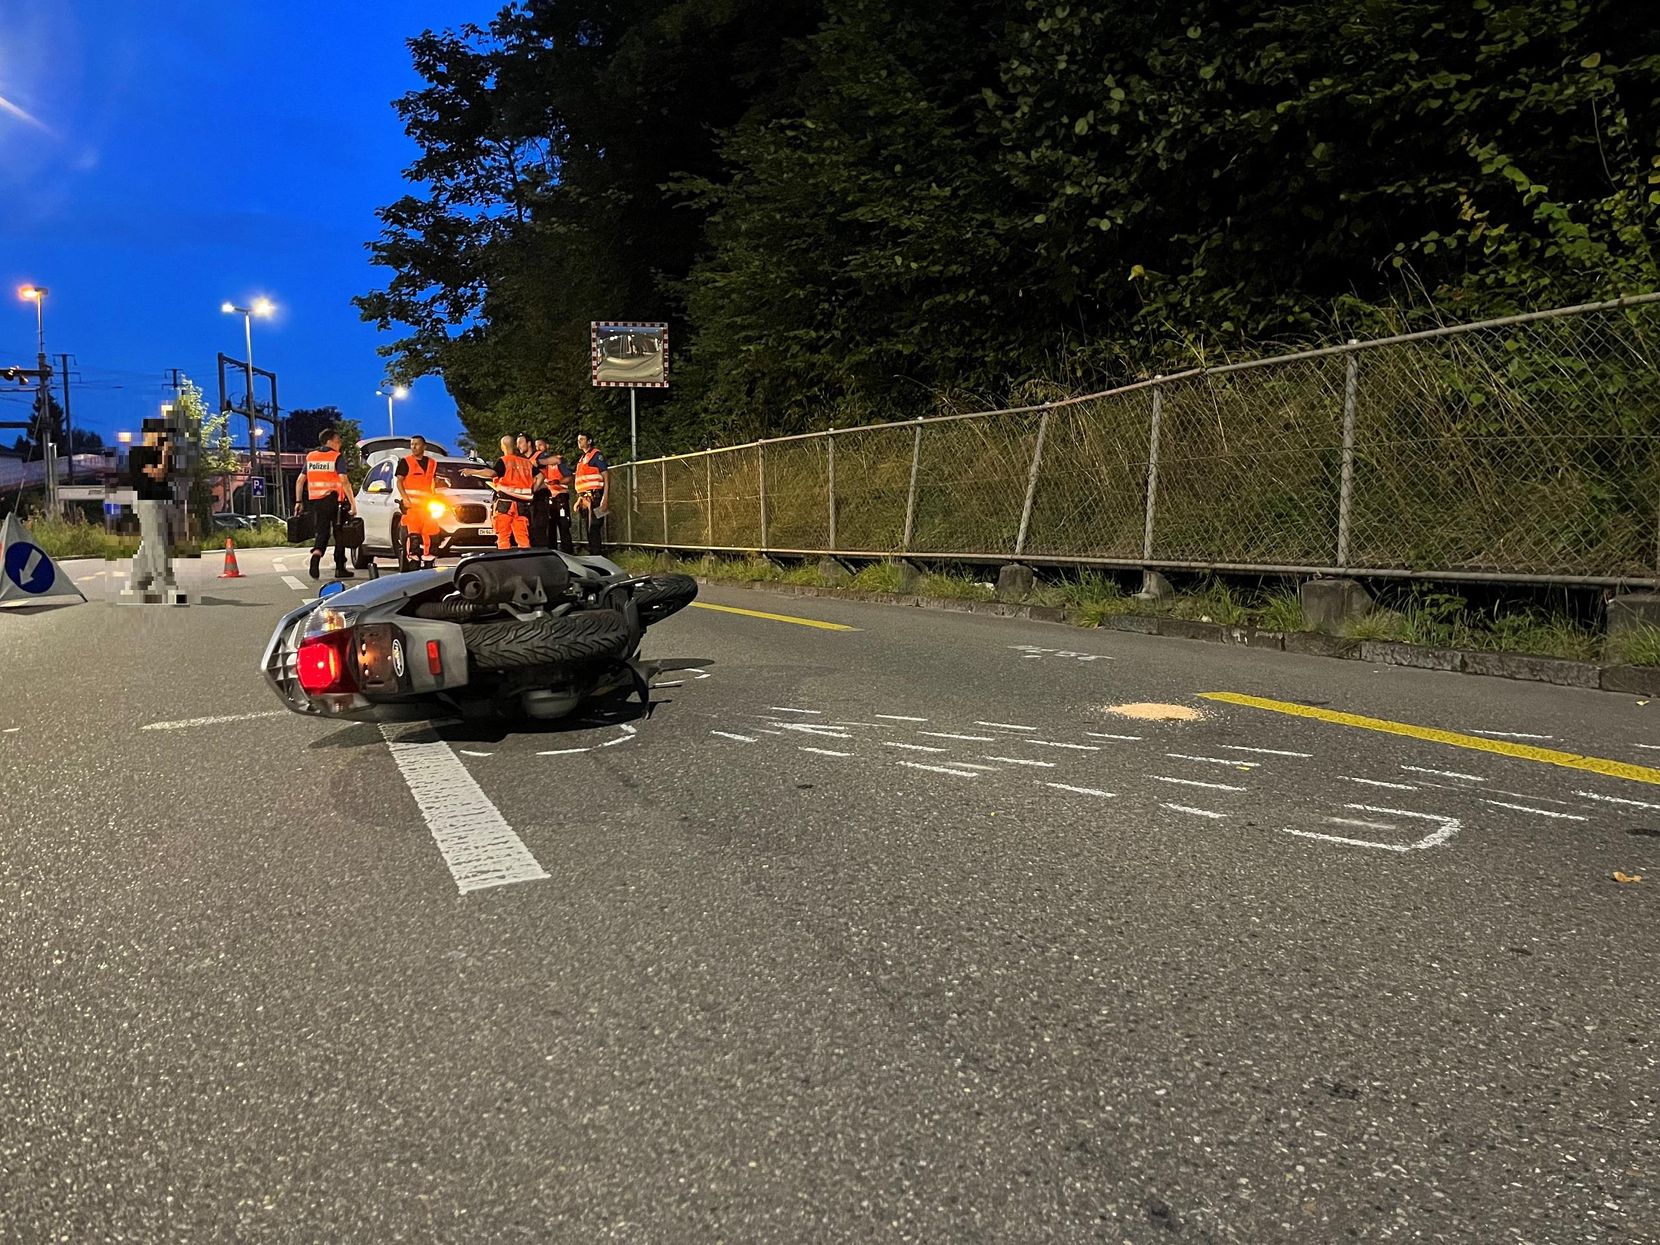 Ein Motorroller liegt nach einem Unfall auf einer Strasse.